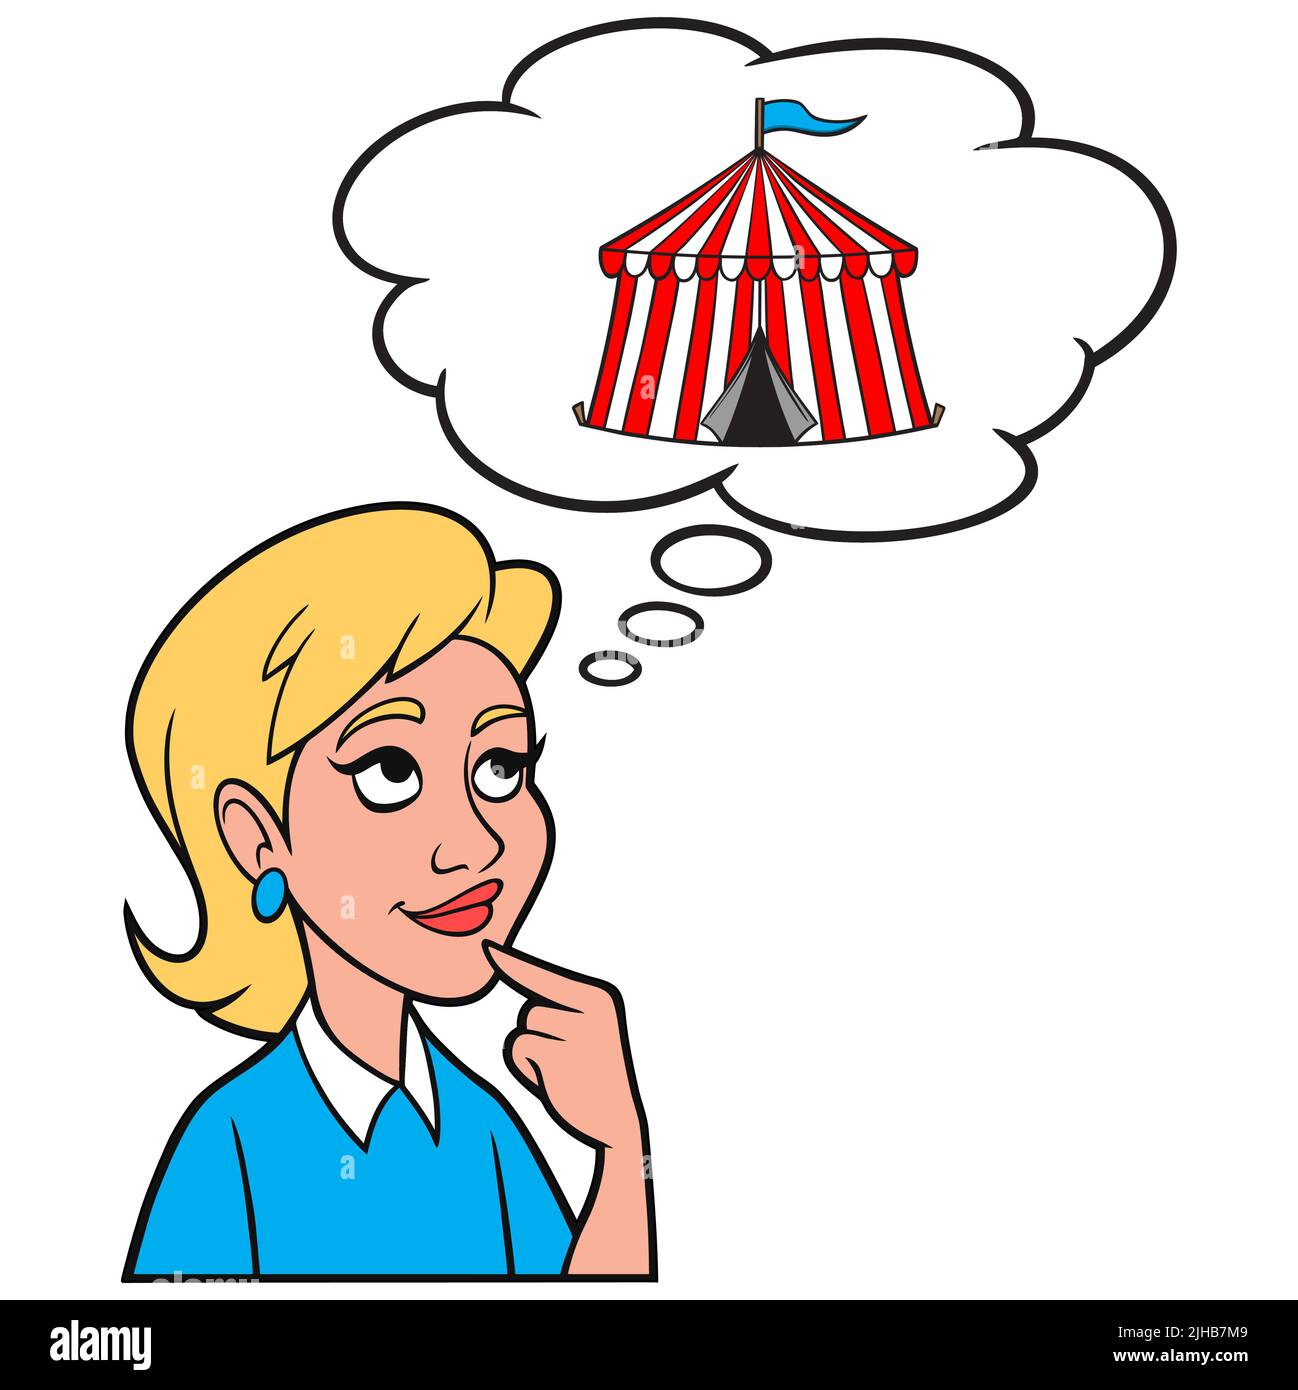 Girl Thinking about a Circus Tent - Eine Cartoon-Illustration eines Mädchens, das darüber nachdenkt, dem Circus beizutreten. Stock Vektor